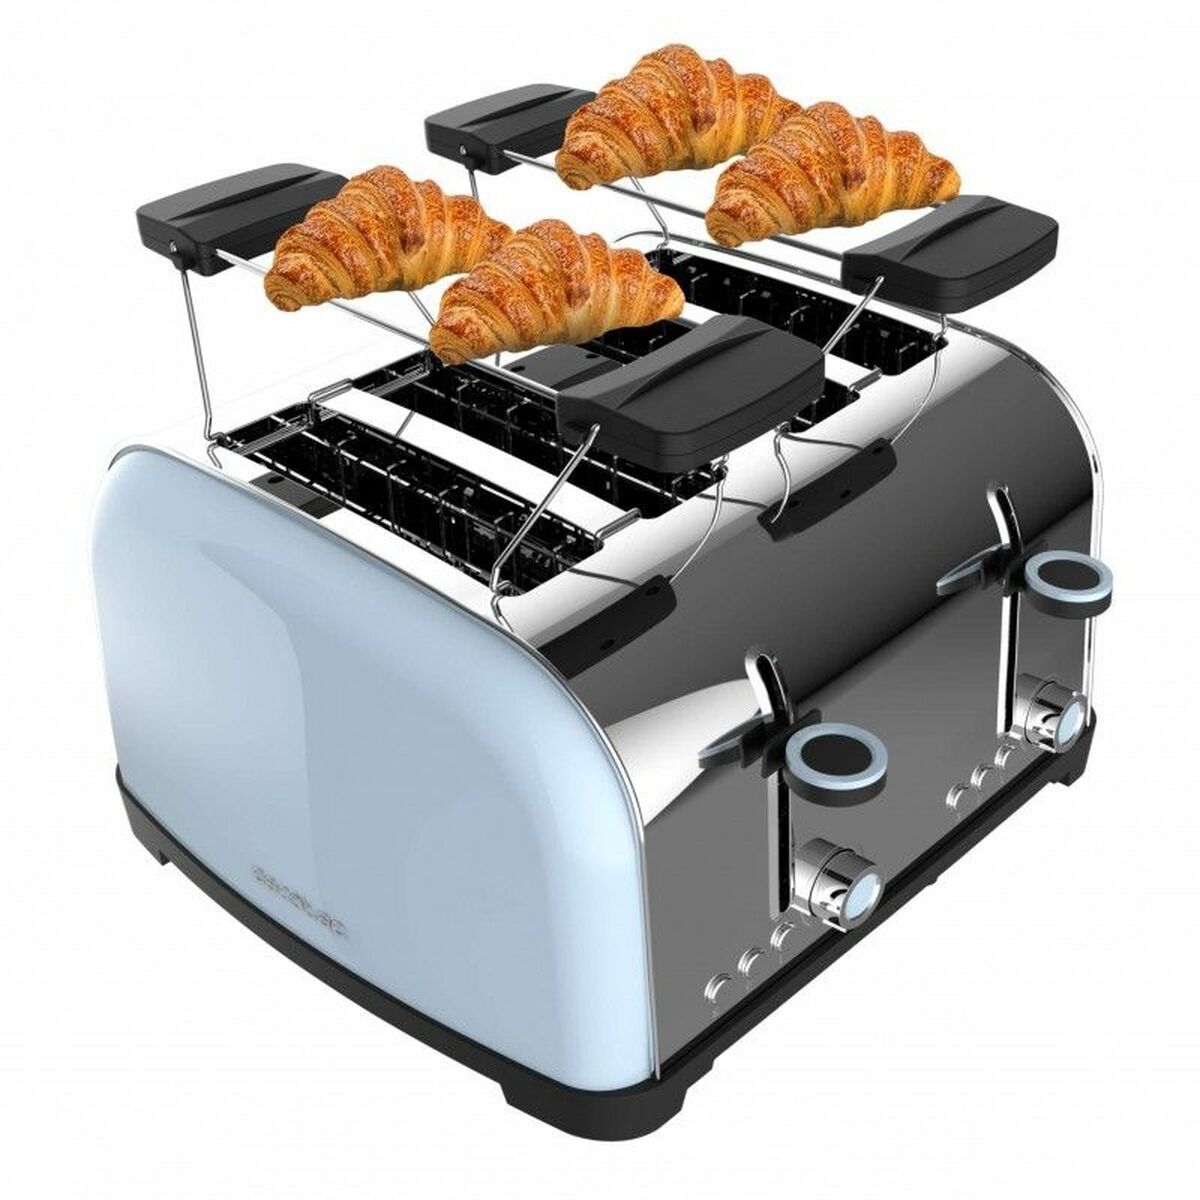 Kaufe Toaster Cecotec Toastin' time 1700 Double 1700 W bei AWK Flagship um € 72.00